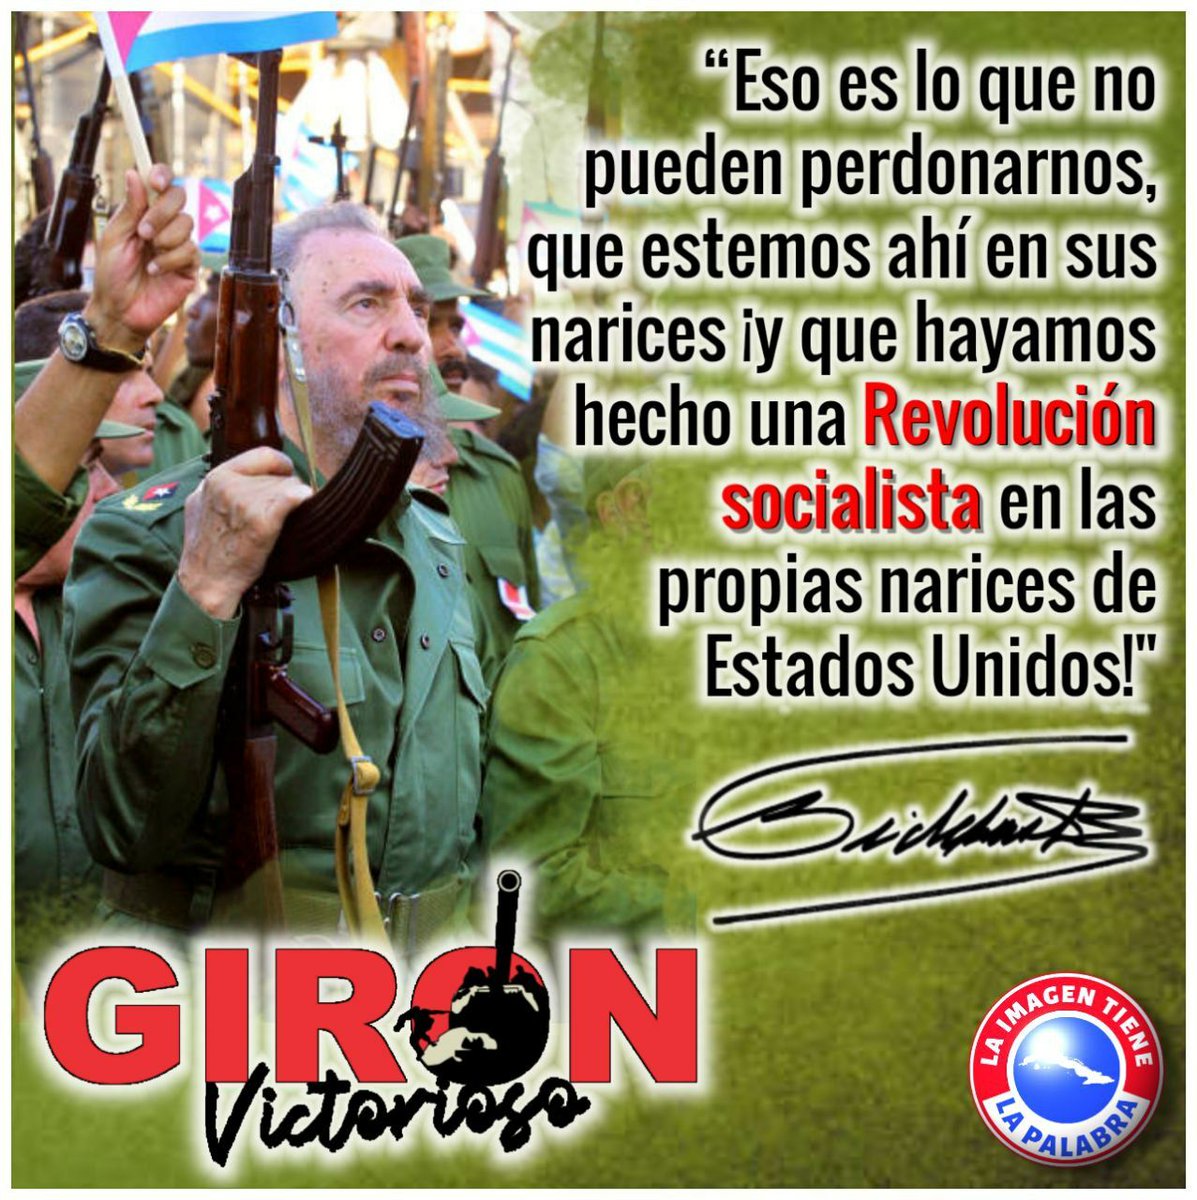 Girón es símbolo de victoria y Cuba es un eterno Girón y estamos dispuestos a luchar hasta la última gota de sangre #Cuba #UnidosPorCuba #JesúsMenéndezTierraDeValientes